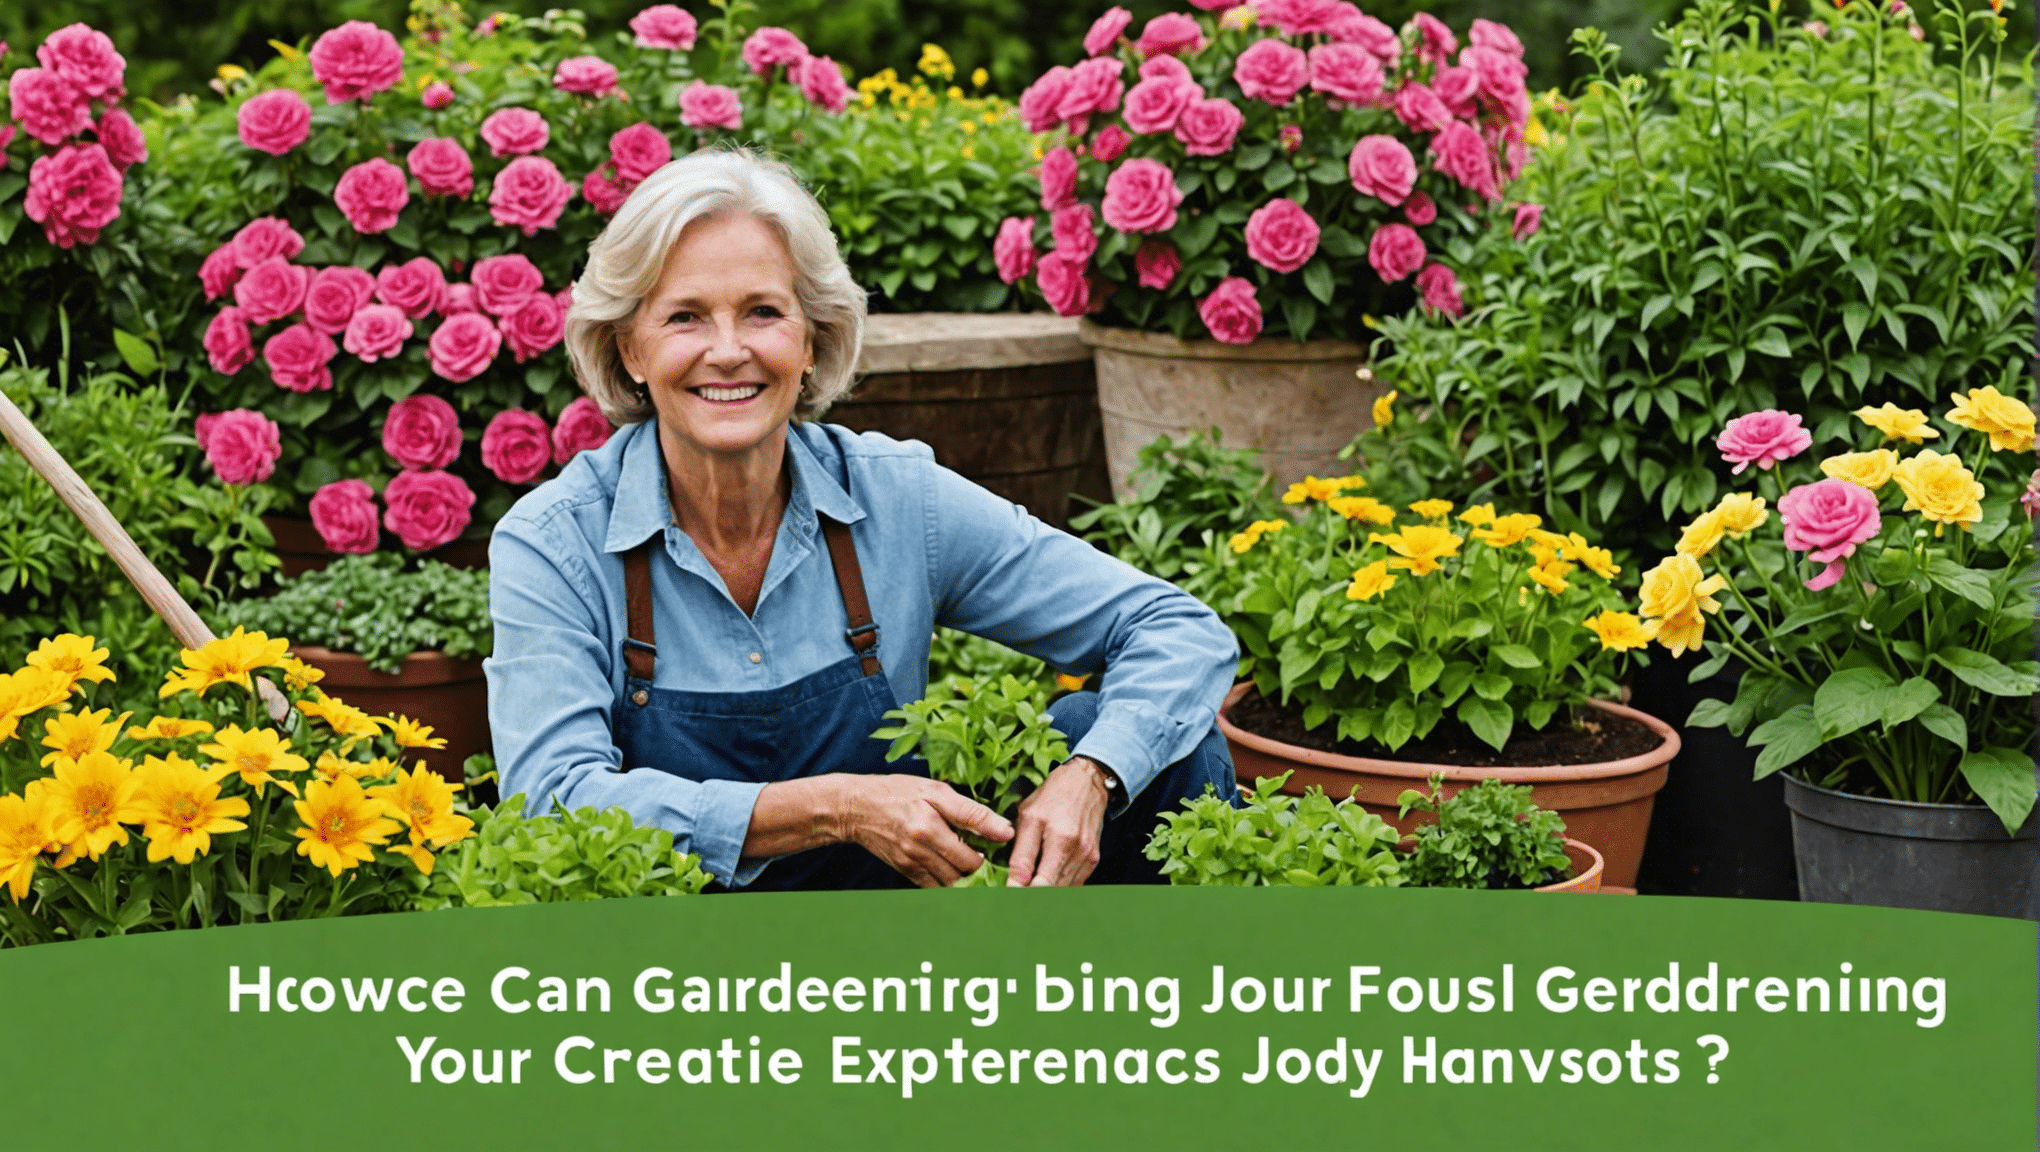 descubra como as ideias para diários de jardinagem podem aprimorar e enriquecer sua jornada de jardinagem. explore os benefícios e dicas para elevar sua experiência de jardinagem.